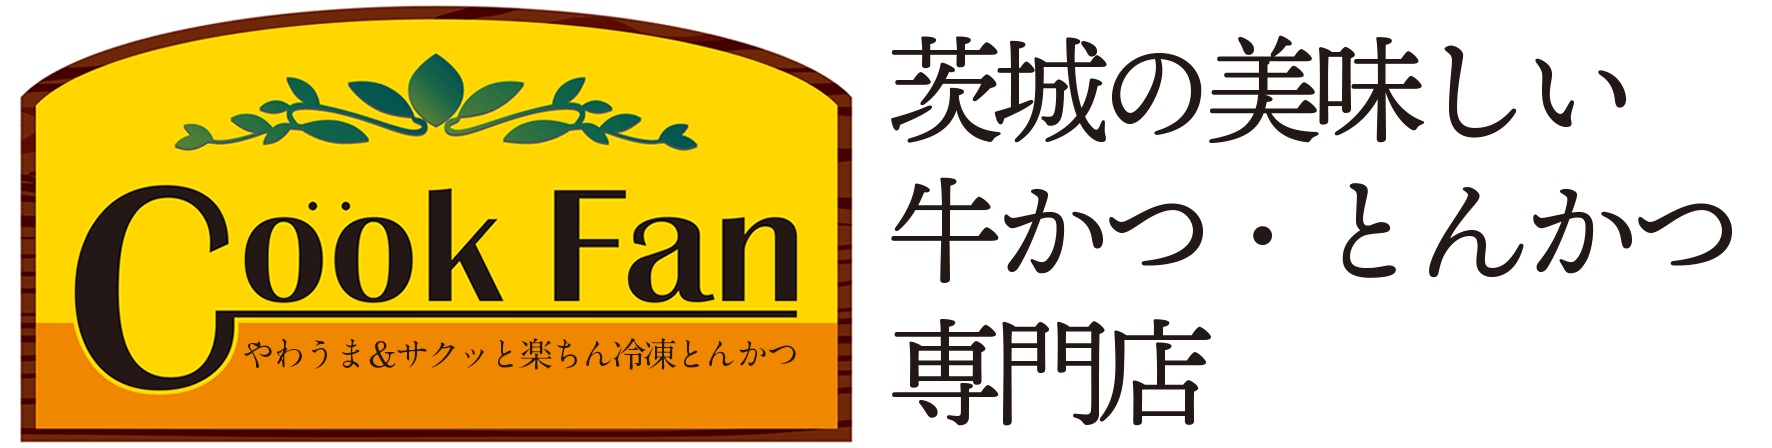 クックファン【CookFan】